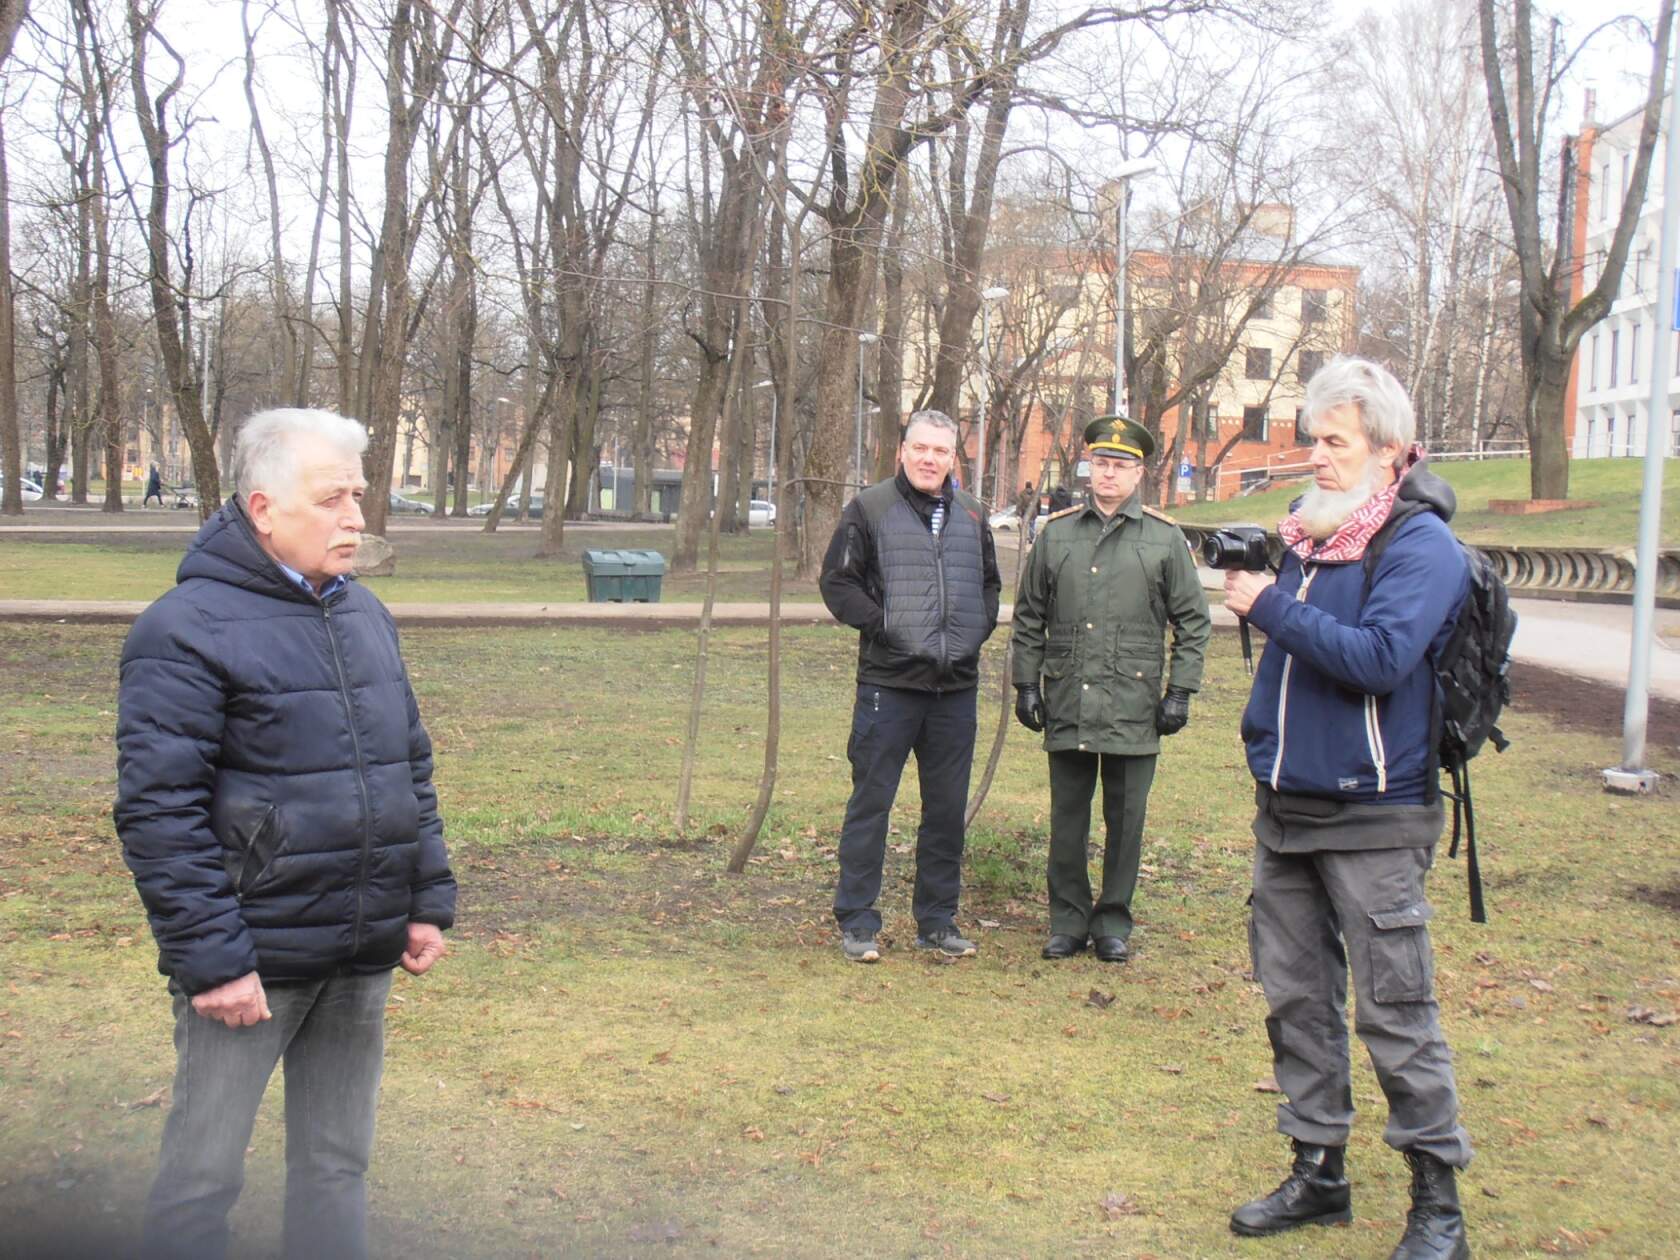 Altenburgs kopā ar Ruslanu Ušakovu pasākuma laikā Rīgā. Foto no sociālajiem tīkliem. 